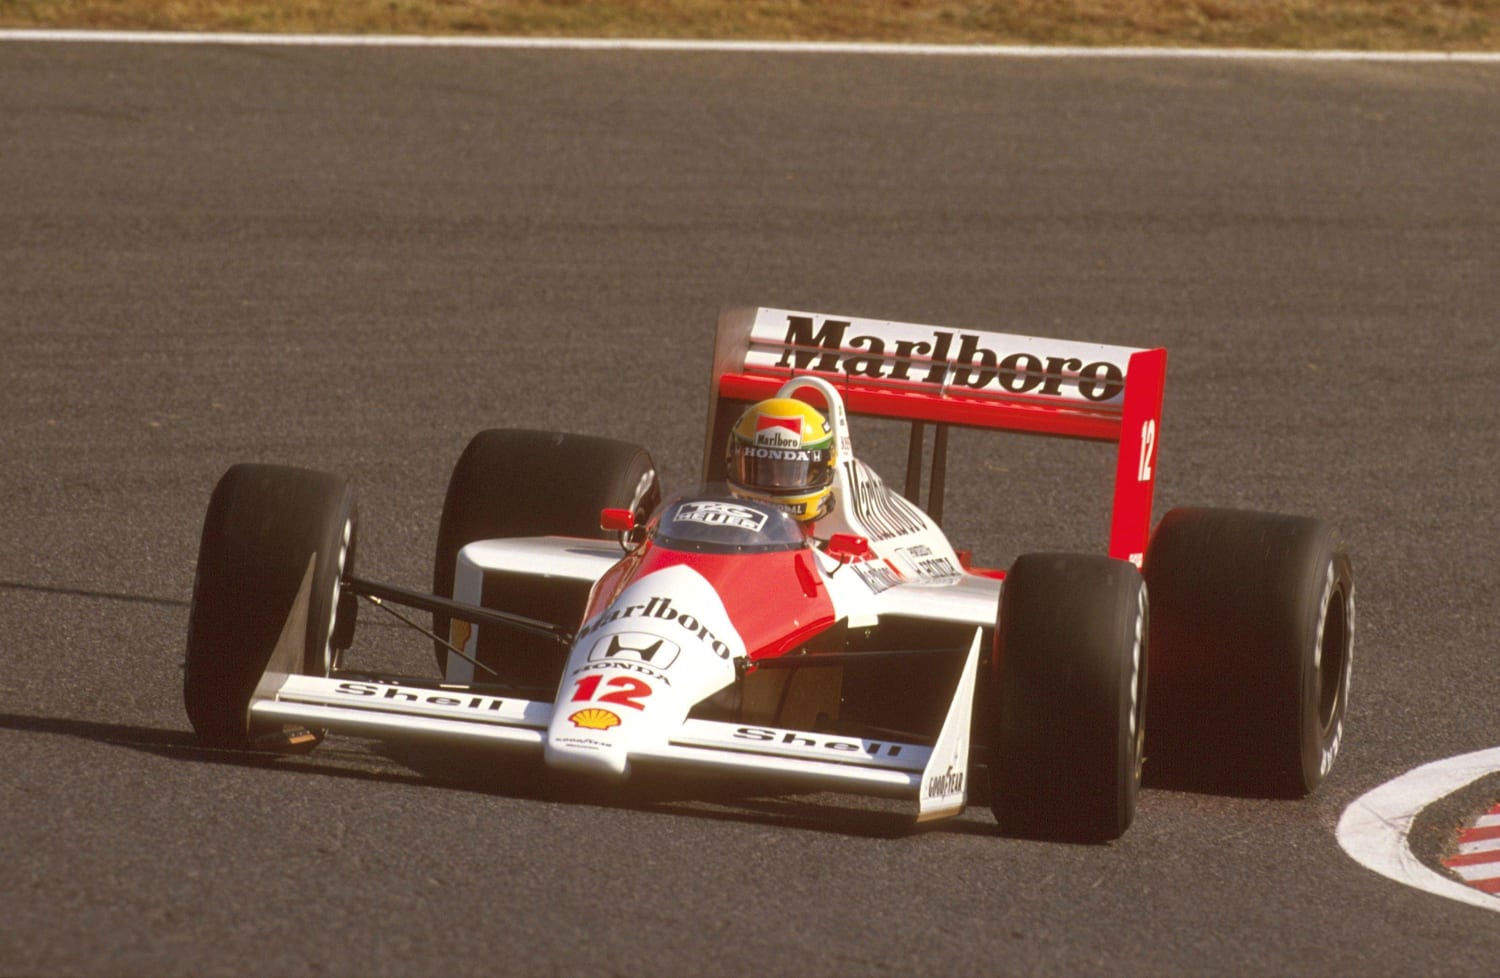 10 detalles del debut de Ayrton Senna en Fórmula 1